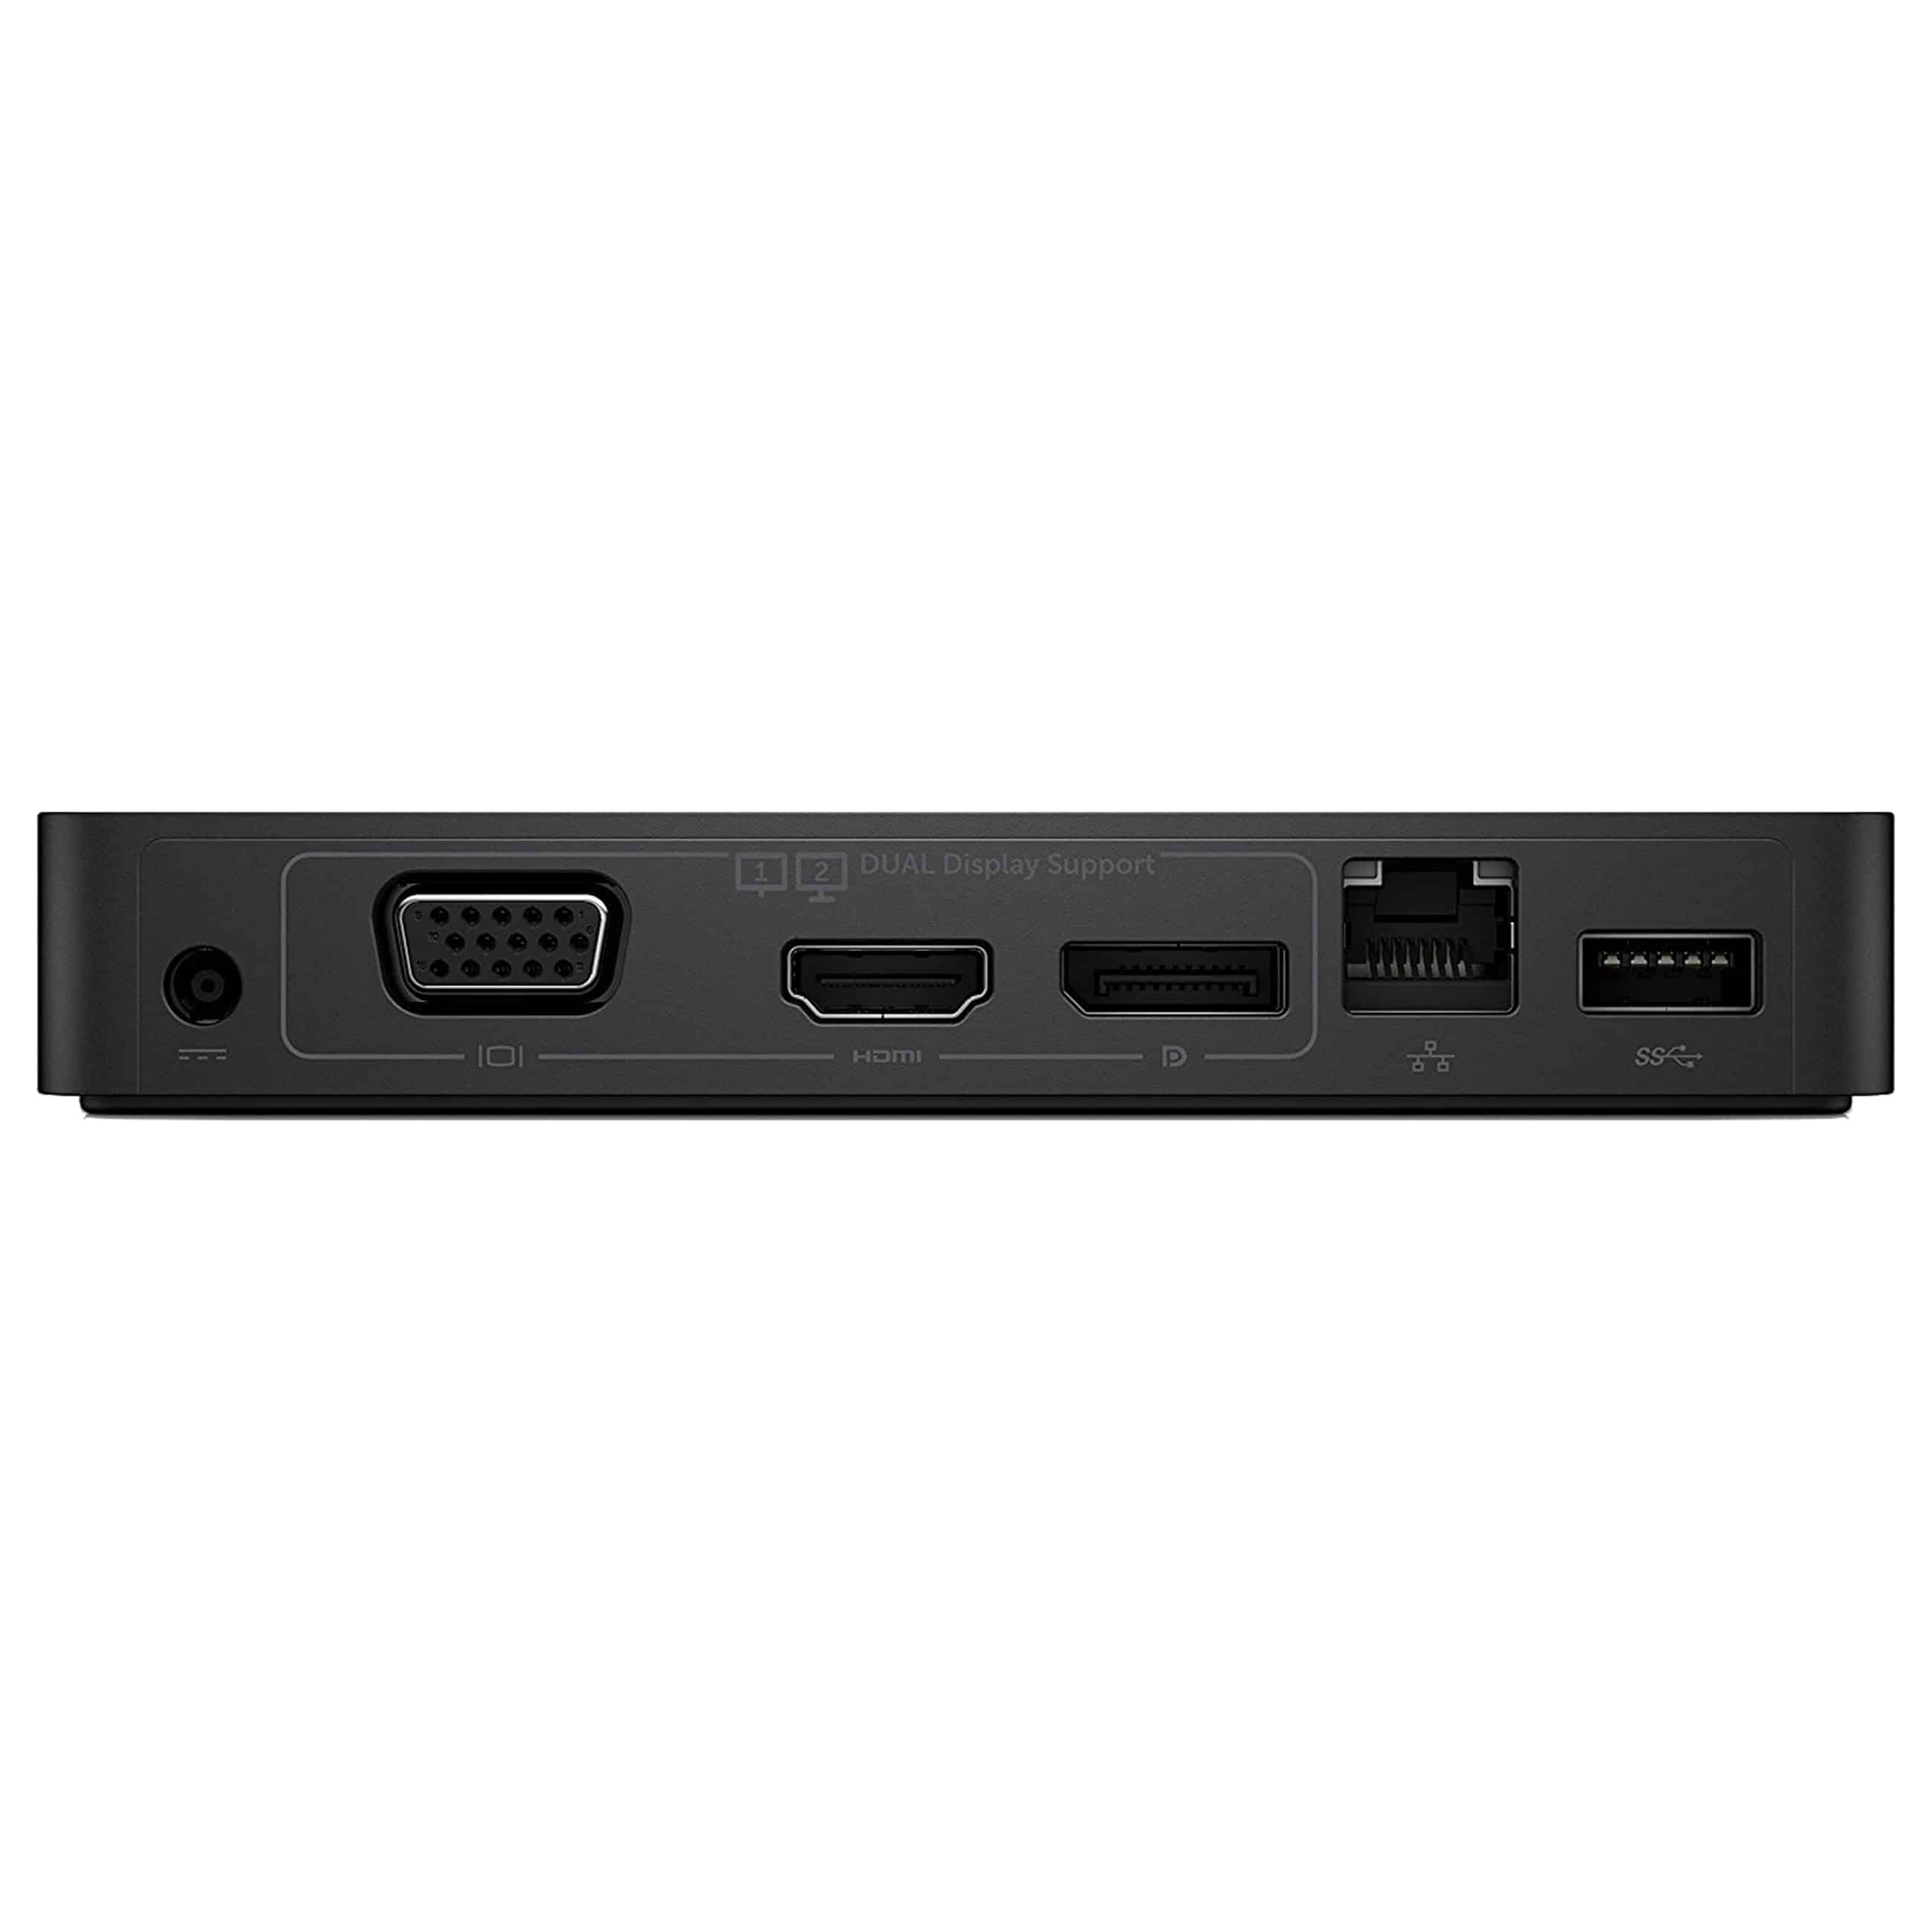 Dell Dual Video USB 3.0 Docking Station D1000 - mit Netzteil - Gebraucht